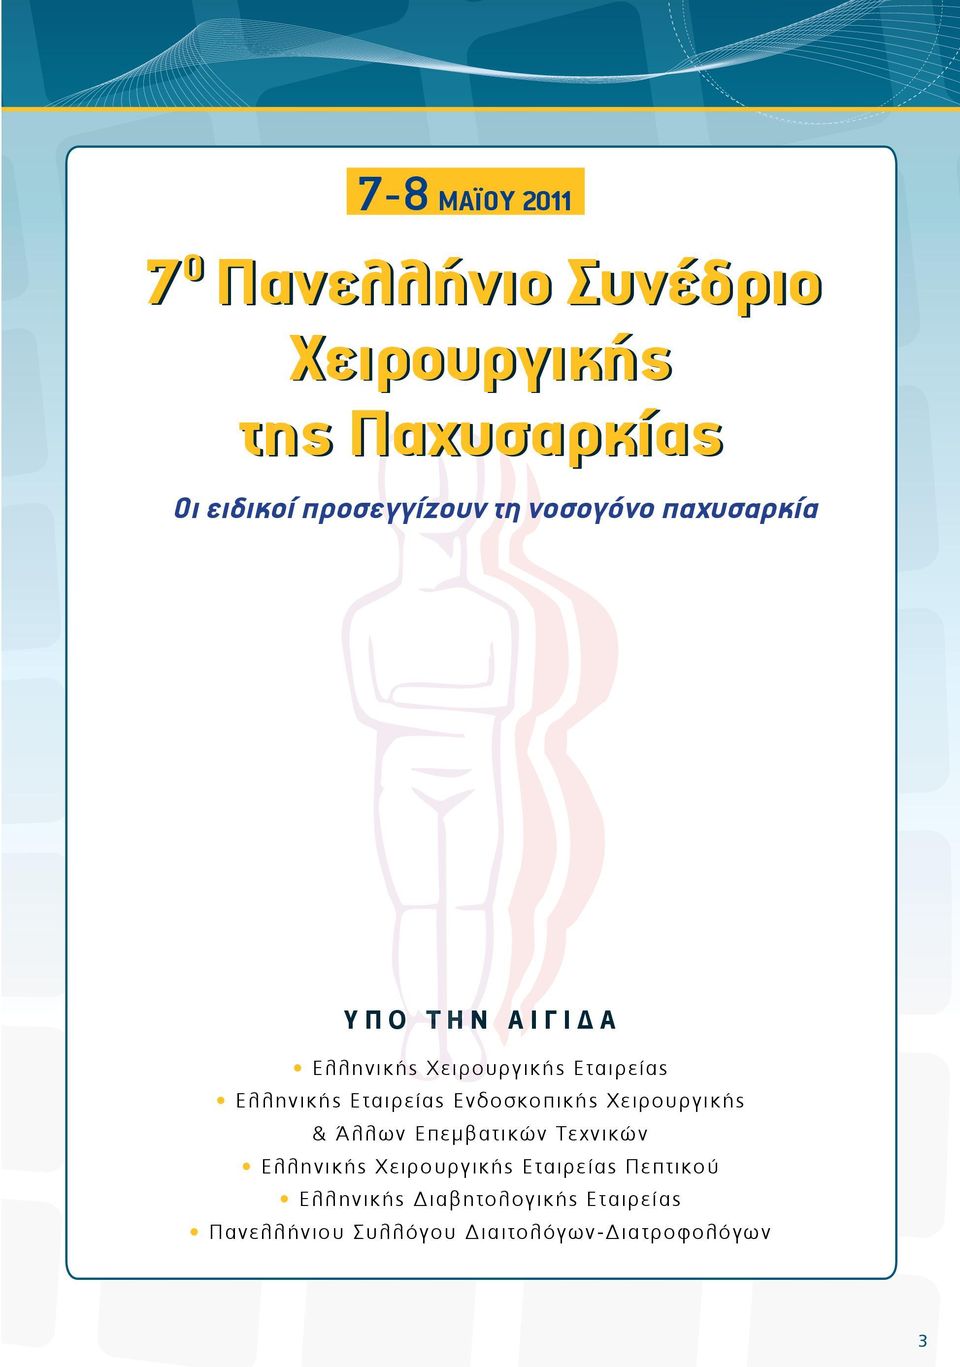 Ενδοσκοπικής Χειρουργικής & Άλλων Επεμβατικών Τεχνικών Ελληνικής Χειρουργικής Εταιρείας Πεπτικού Ε